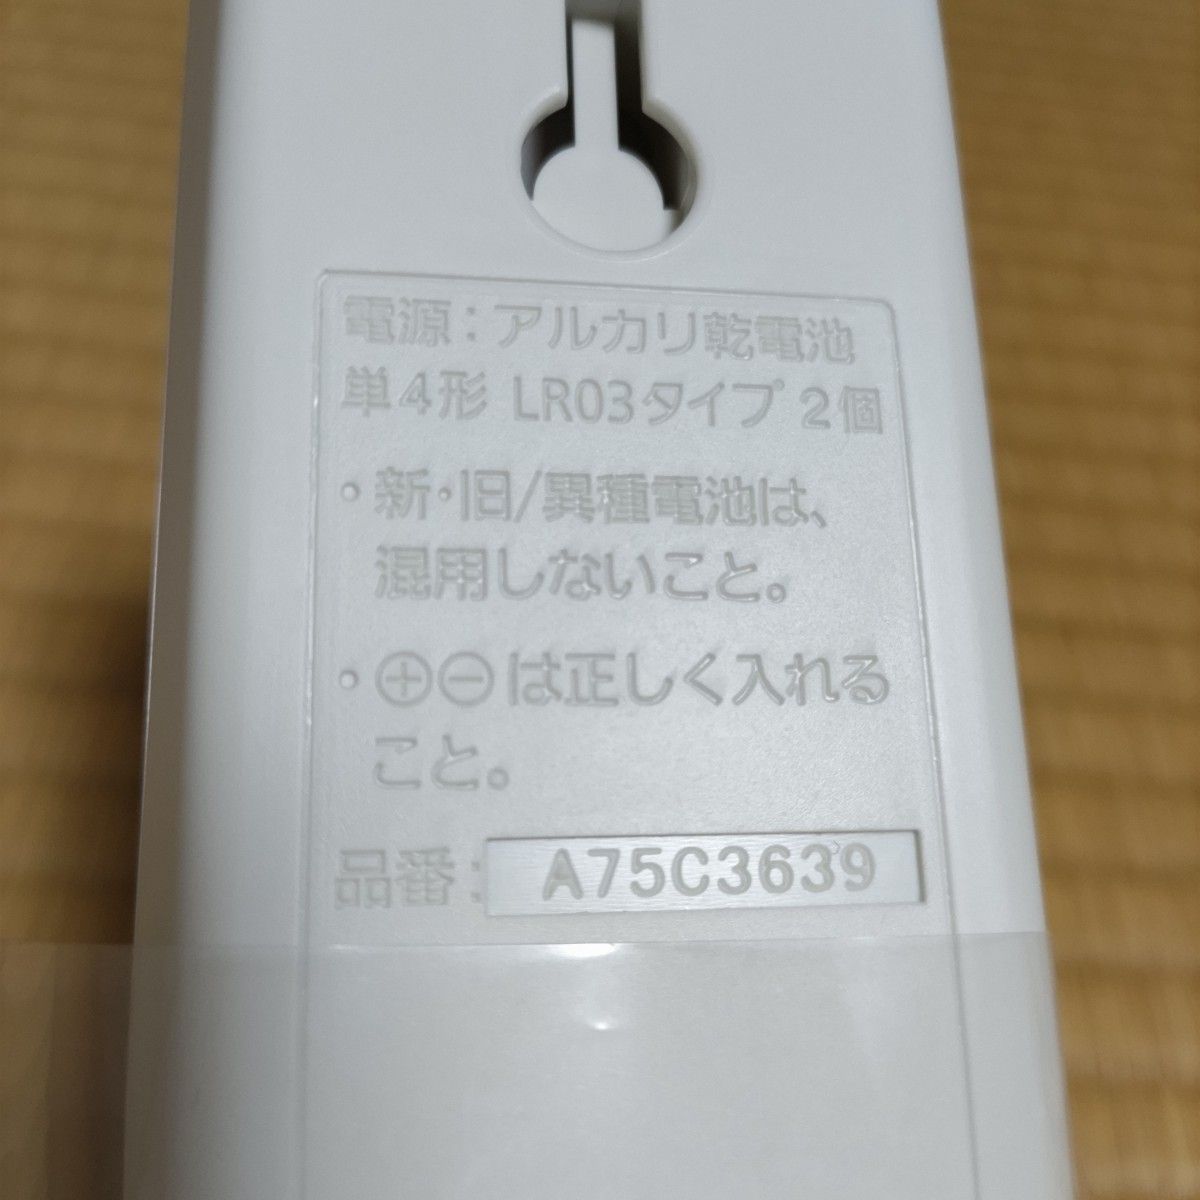 ◆【新品未使用】Panasonic パナソニック ルームエアコン エアコン リモコン A75C3639